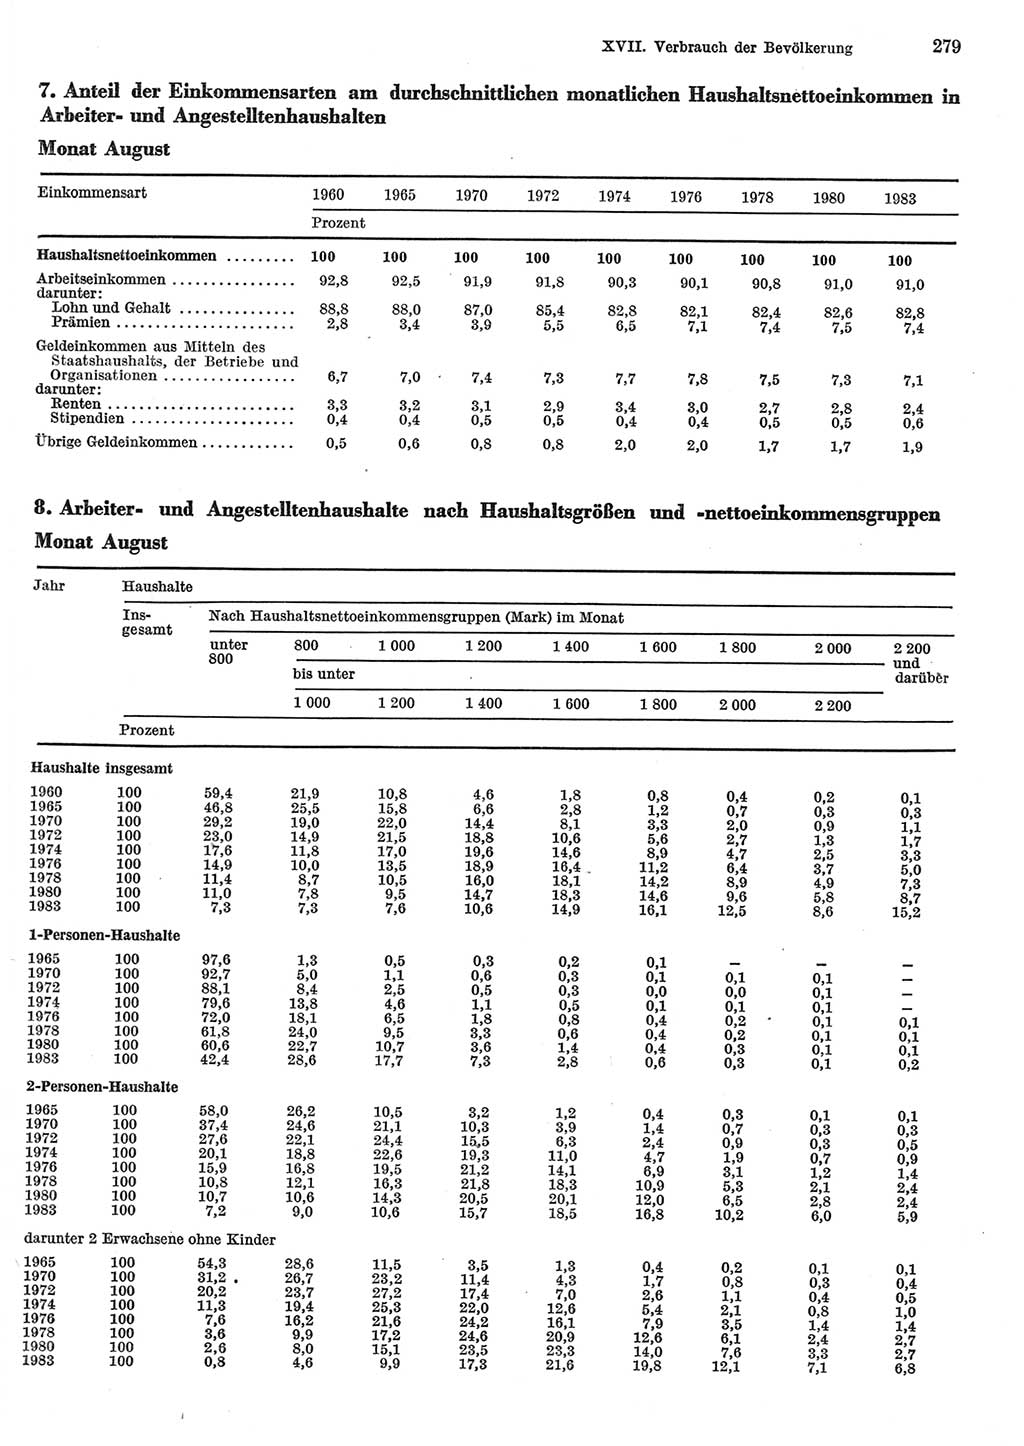 Statistisches Jahrbuch der Deutschen Demokratischen Republik (DDR) 1985, Seite 279 (Stat. Jb. DDR 1985, S. 279)